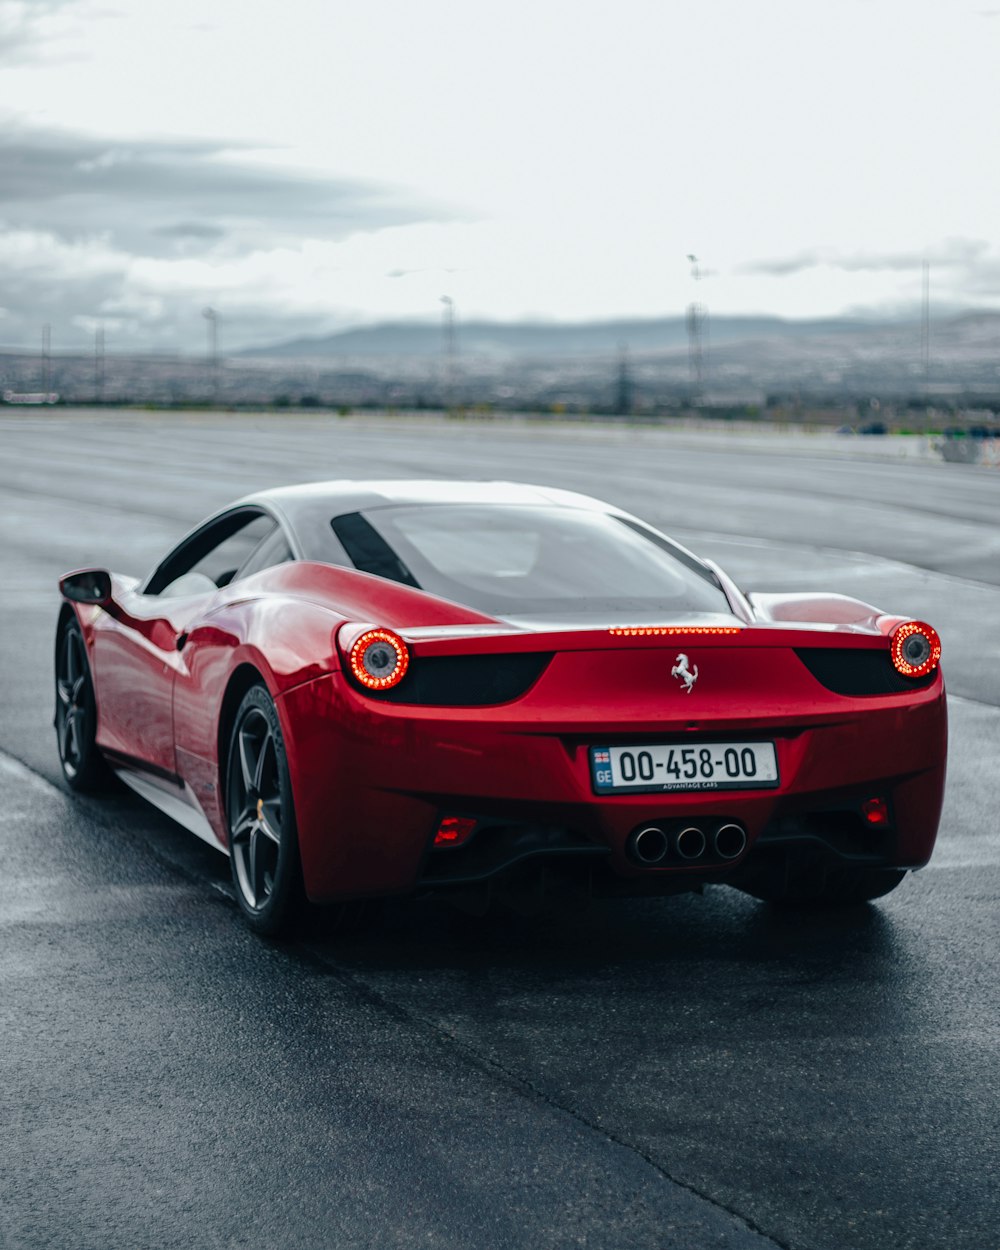 Ein roter Ferrari-Sportwagen fährt eine Straße entlang